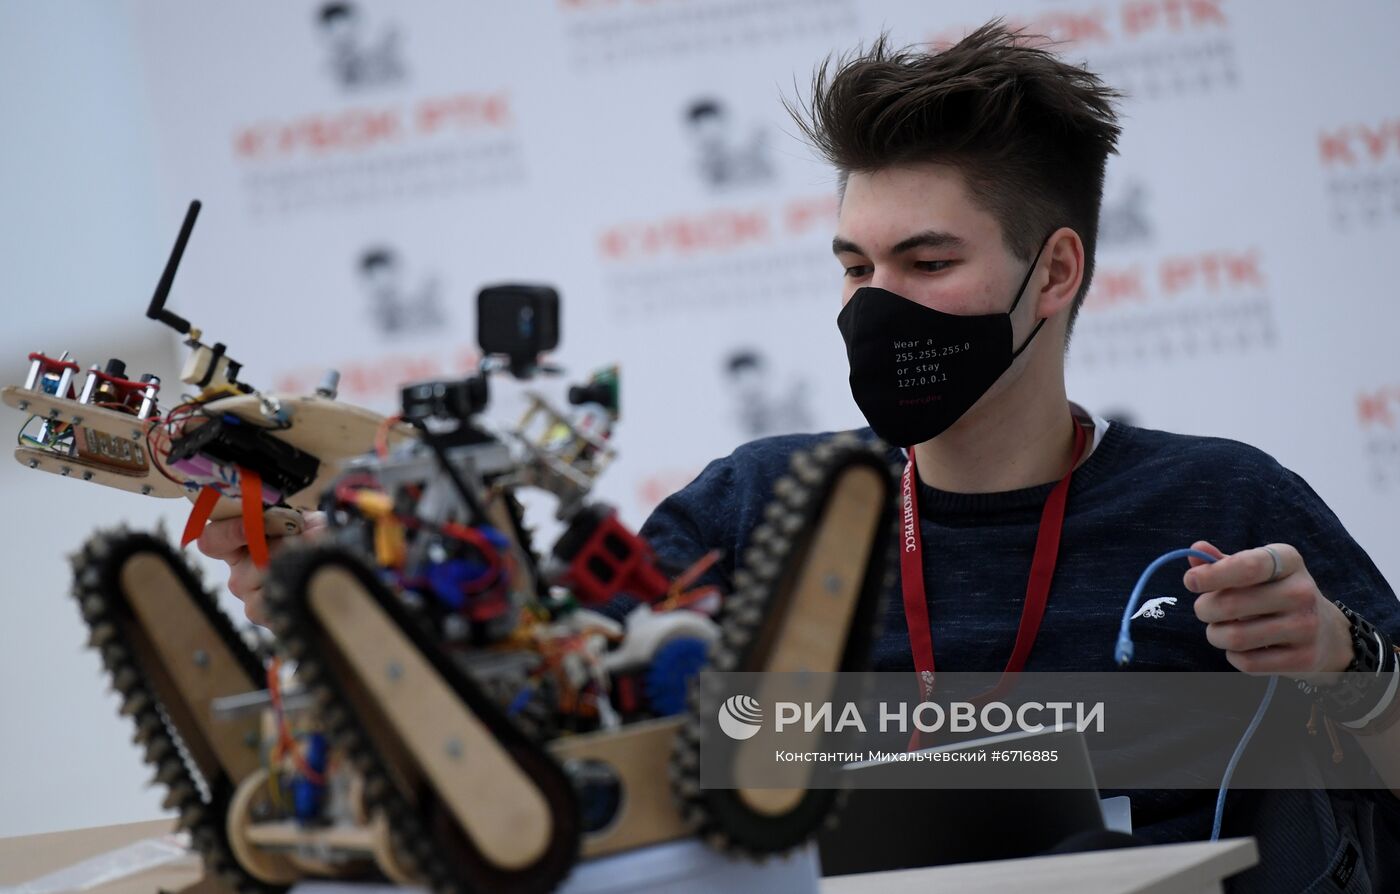 КМУ-2021. Робототехнические соревнования "Кубок РТК"